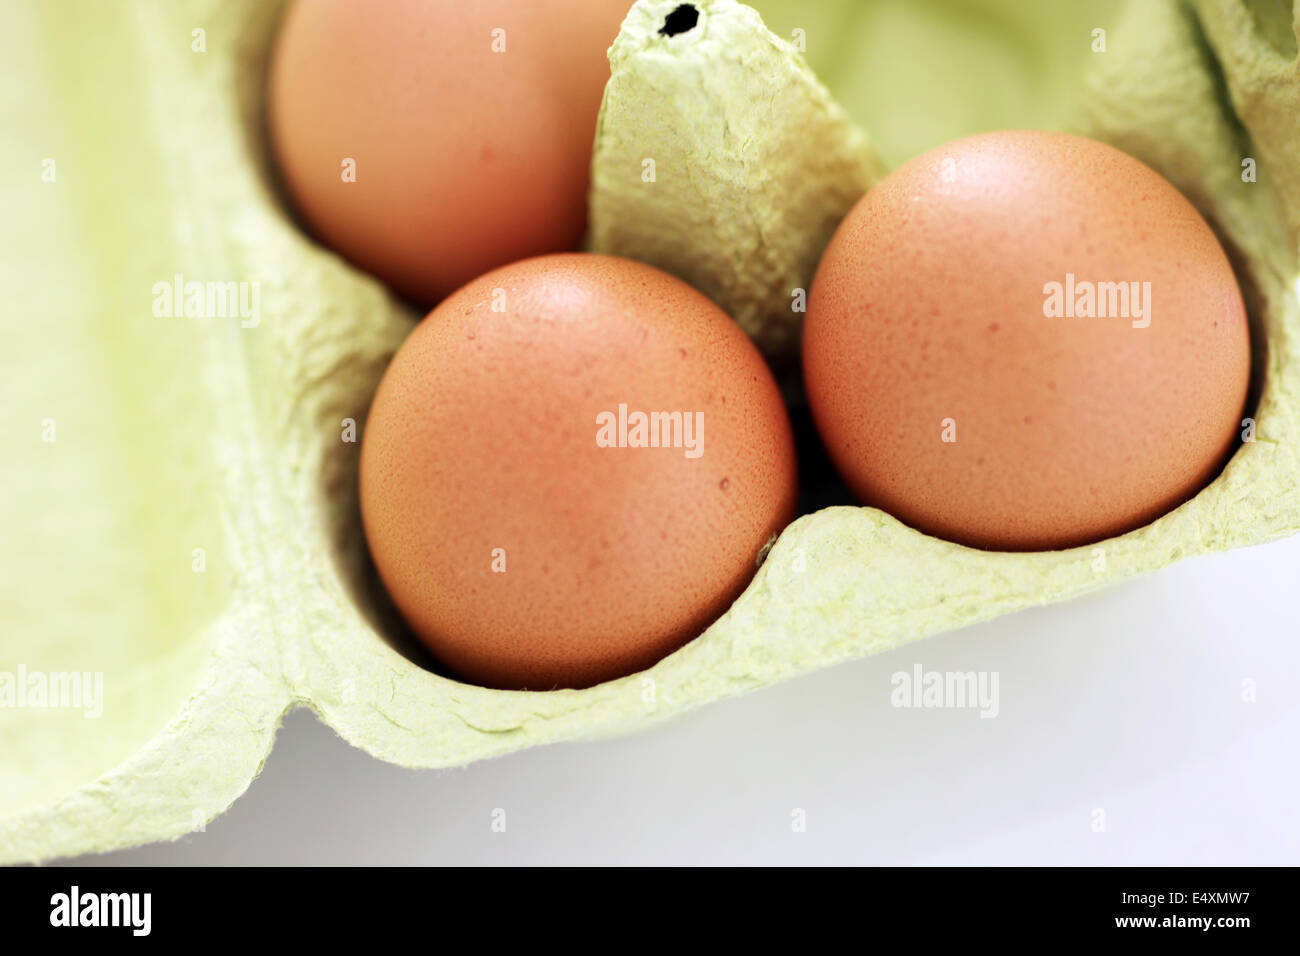 Fresh brown eggs in a carton Stock Photo